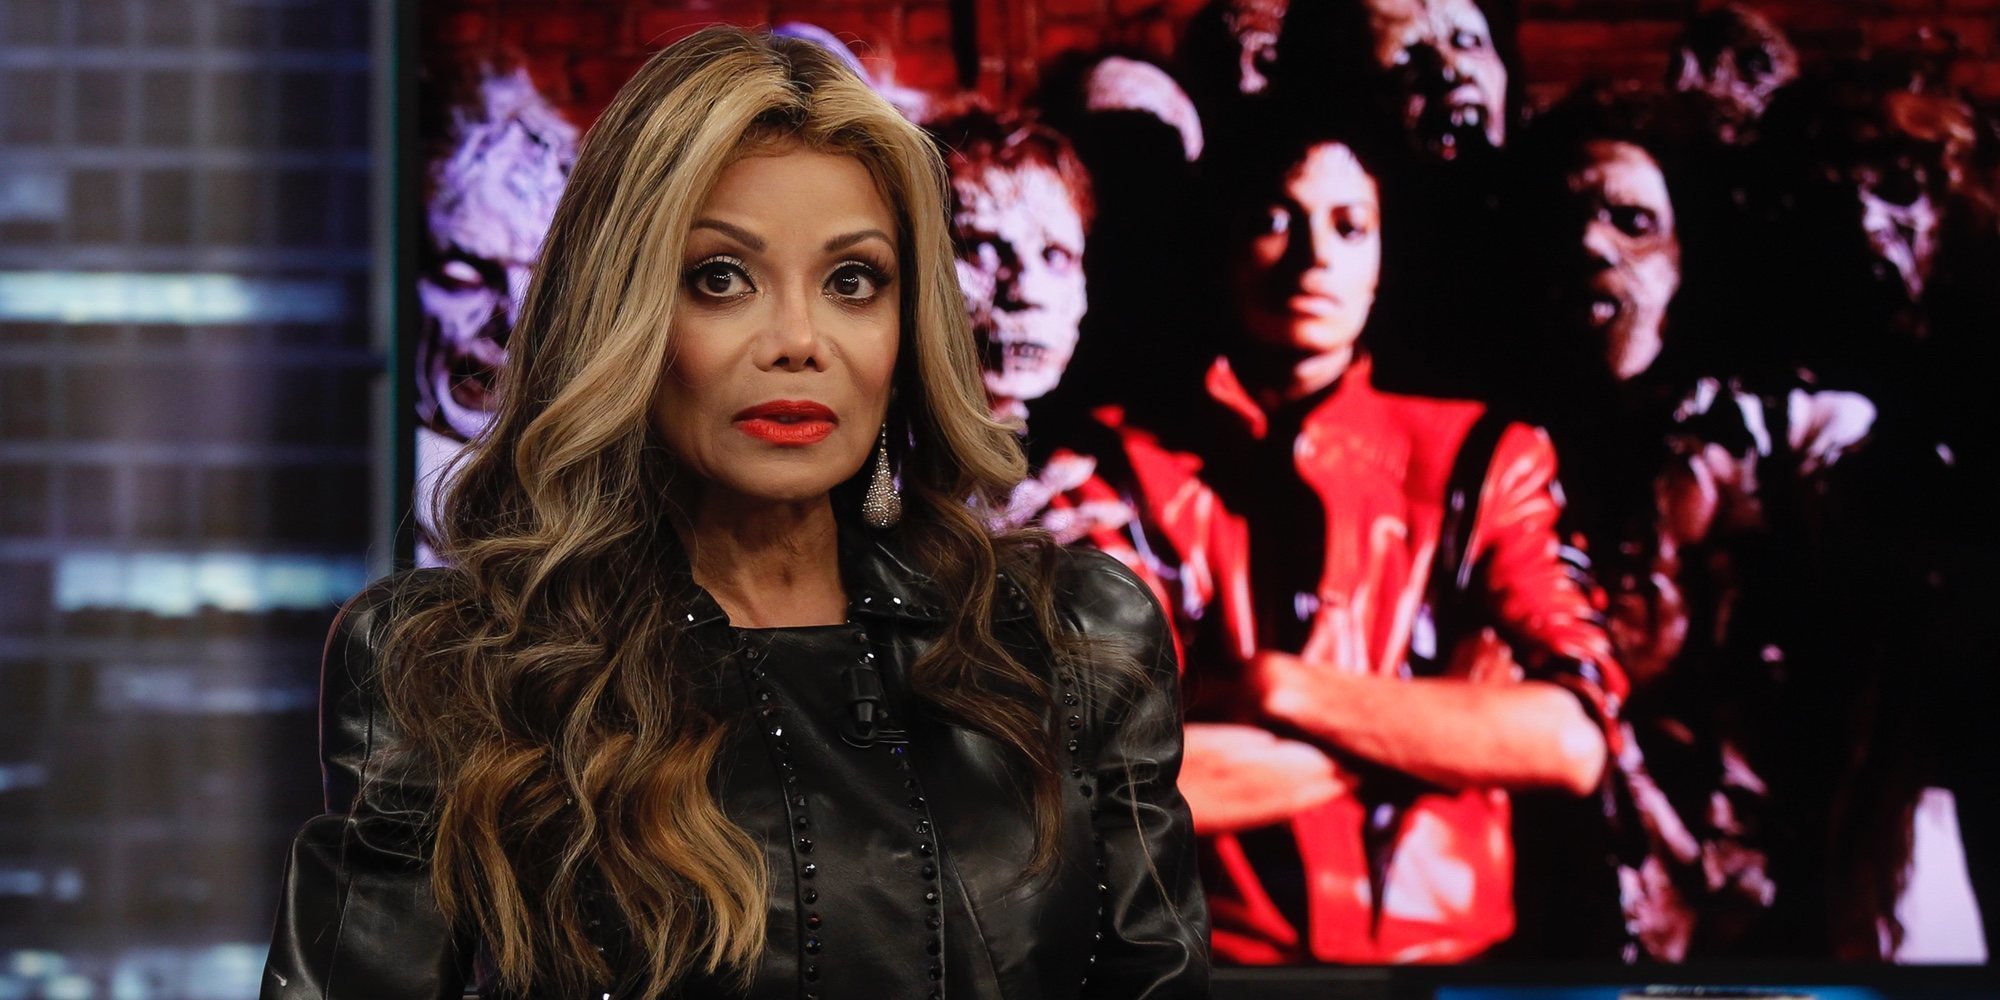 La Toya Jackson revela que su hermano Michael Jackson creía que iba a ser asesinado: "Tenía miedo"